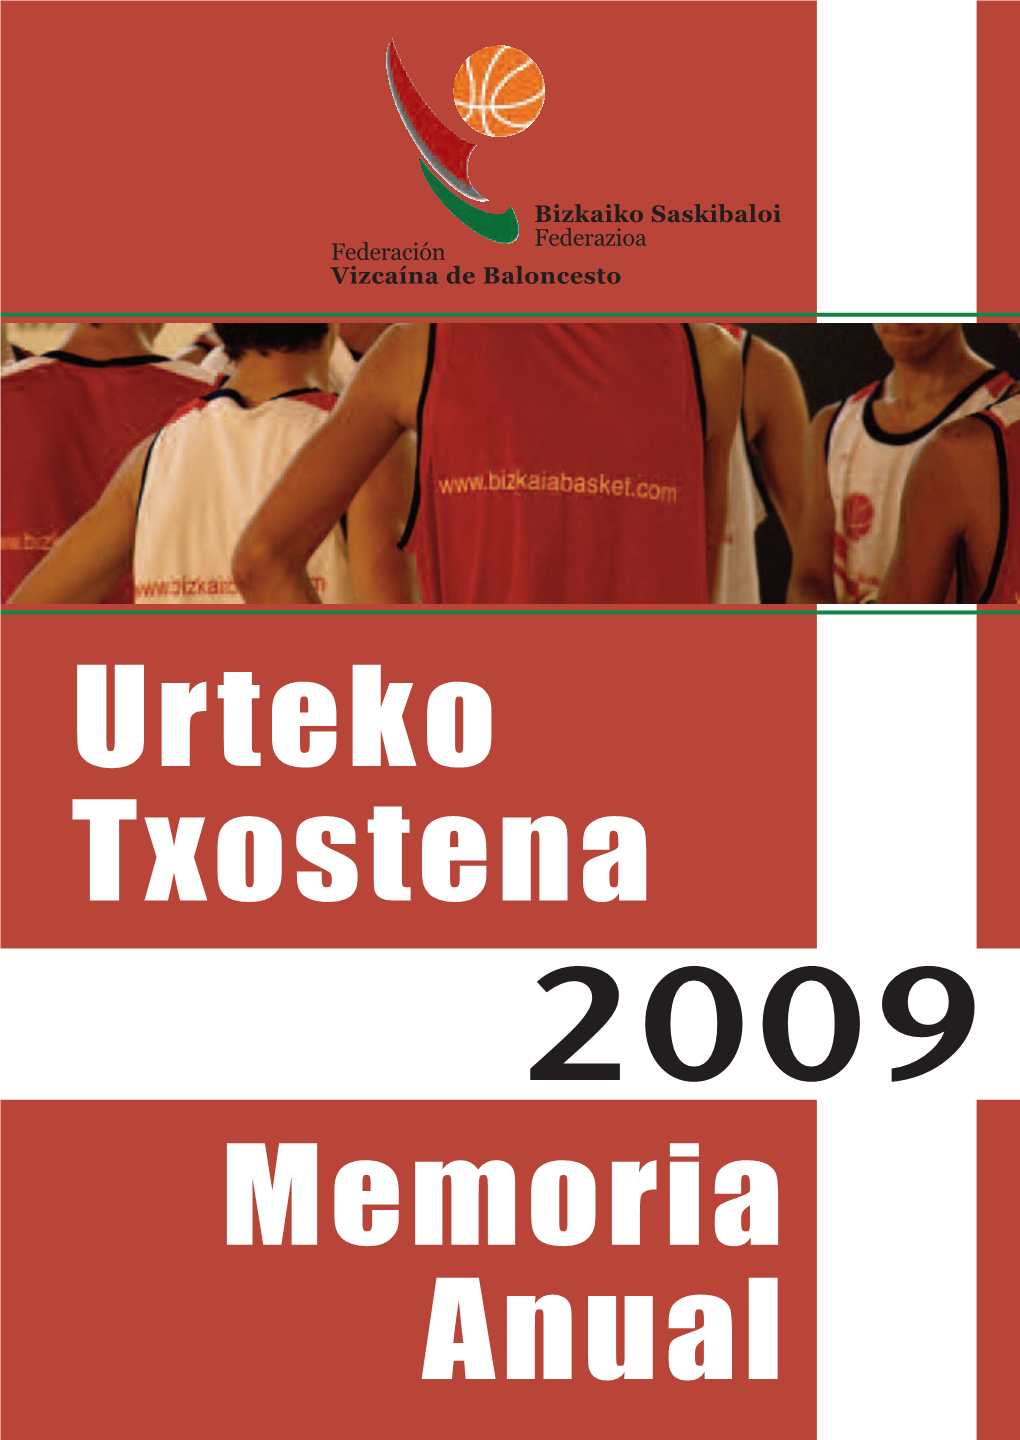 Urteko Txostena Memoria Anual